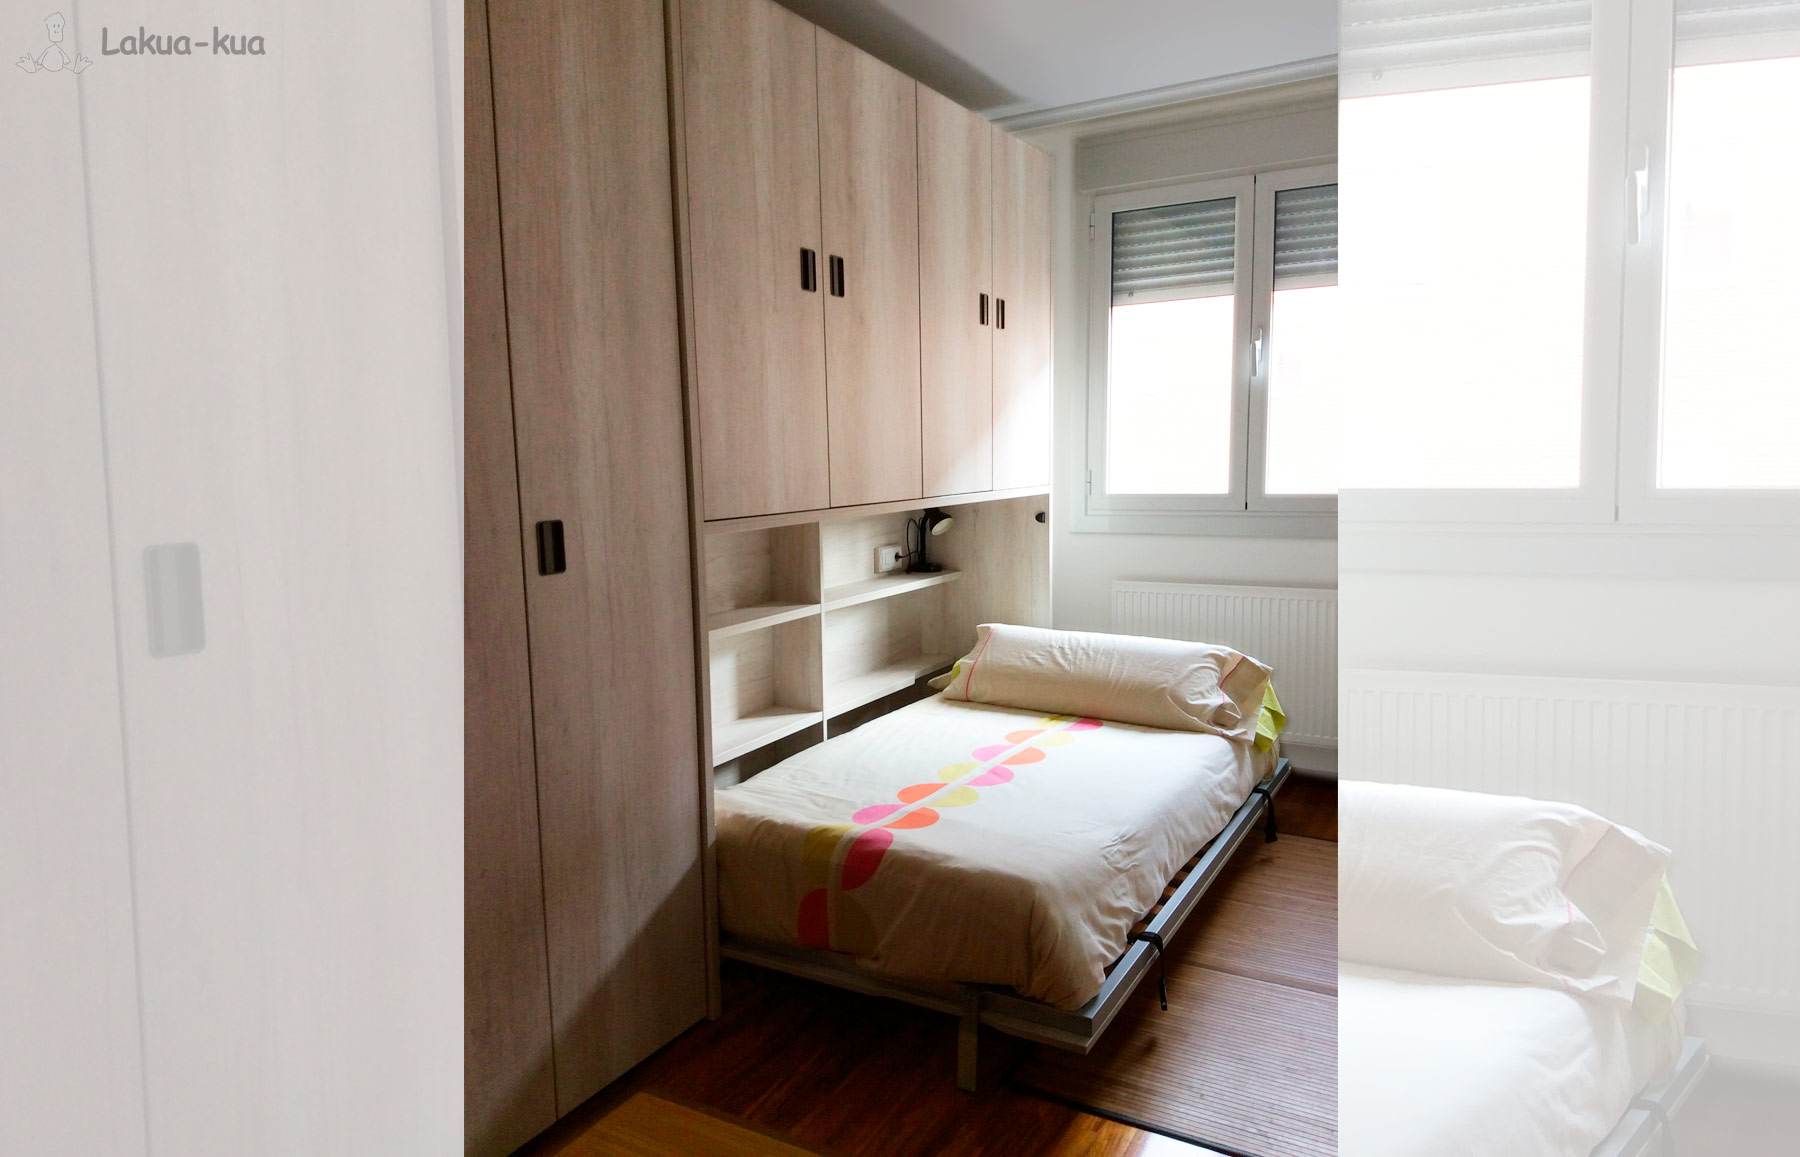 Dormitorio abatible - Dormitorio Joven Infantil Juvenil Muebles Lakua-kua